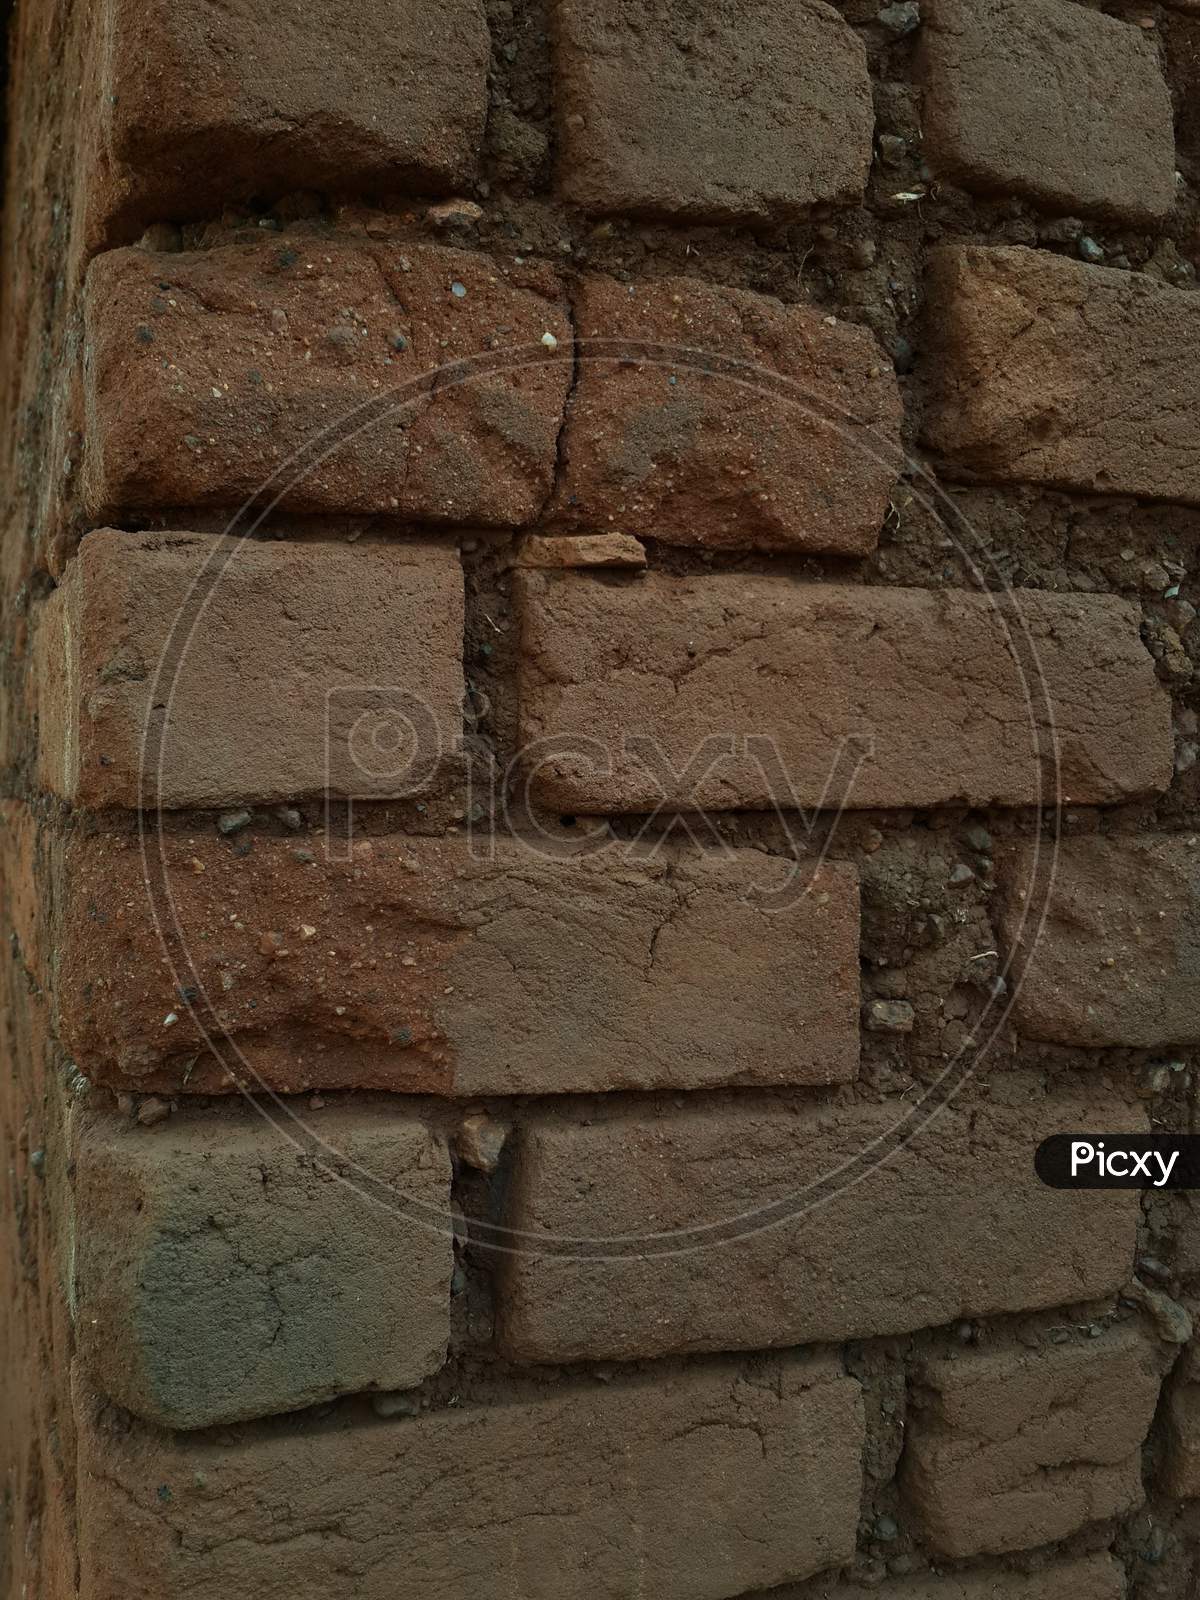 Brick and soil wall